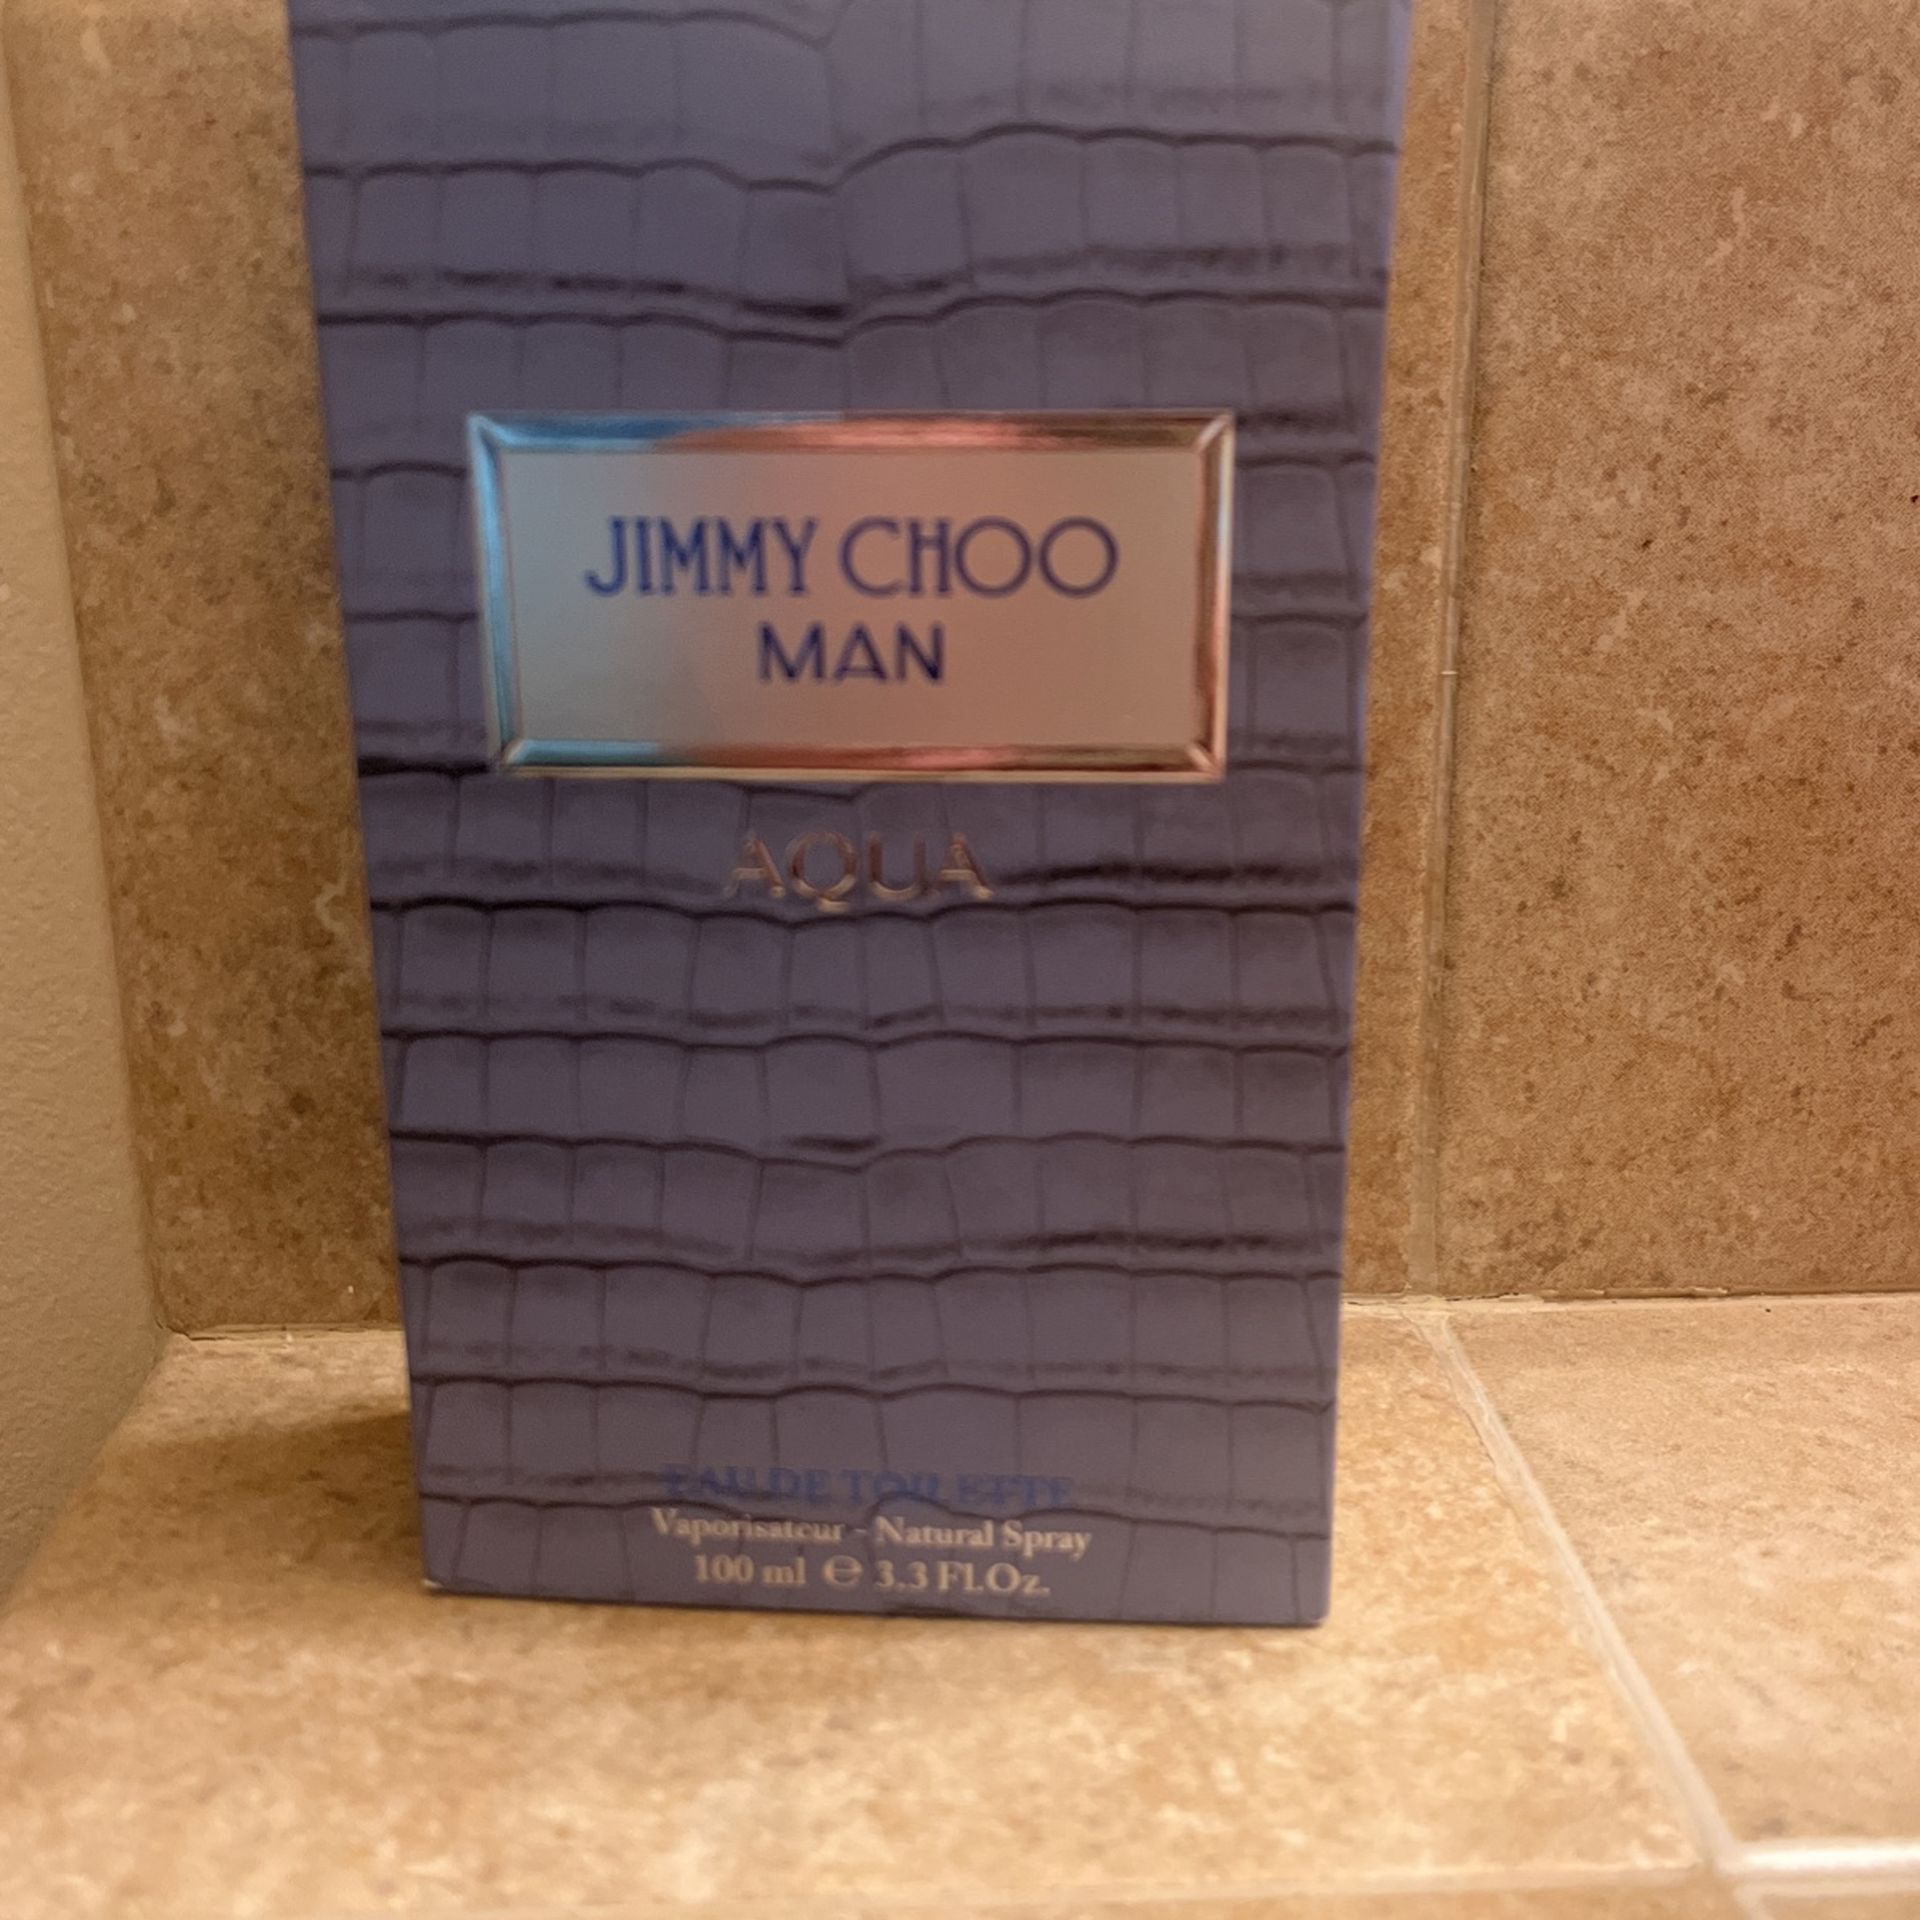 Jimmy Choo Man Aqua 